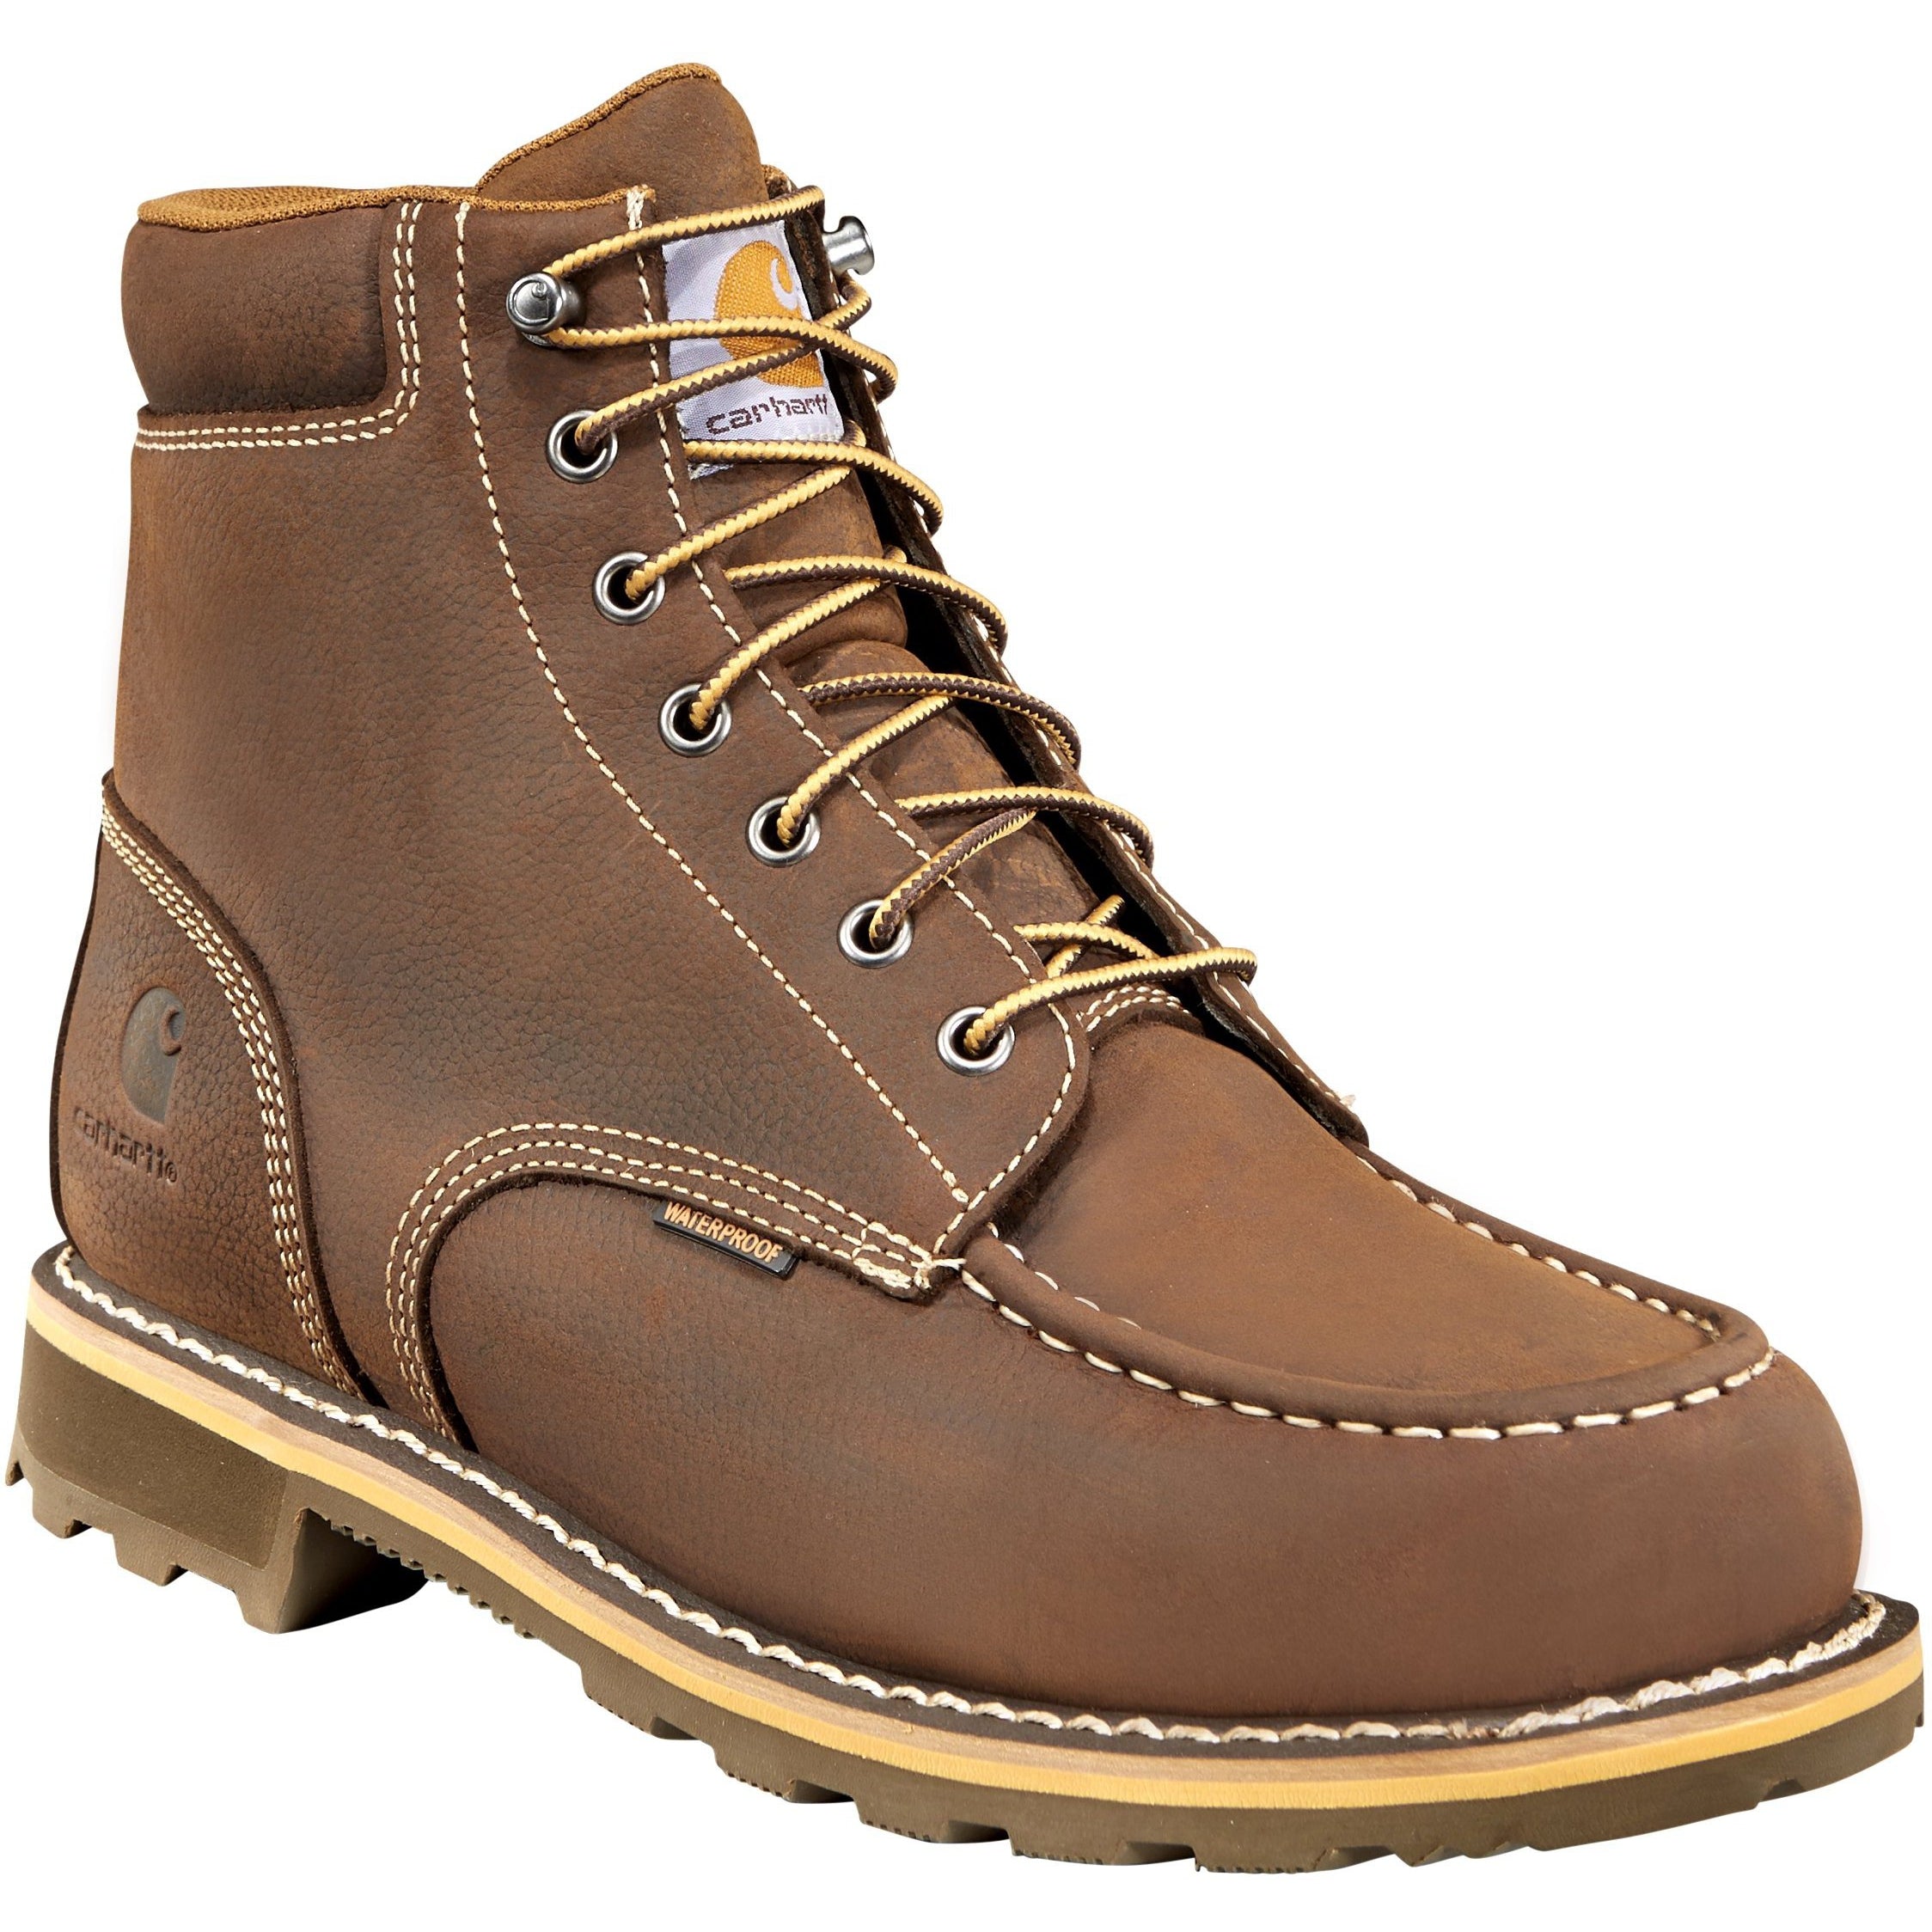 Carhartt Men's 6" Soft Toe Waterproof Work Boot - Brown - CMW6197 8 / Medium / Brown - Overlook Boots